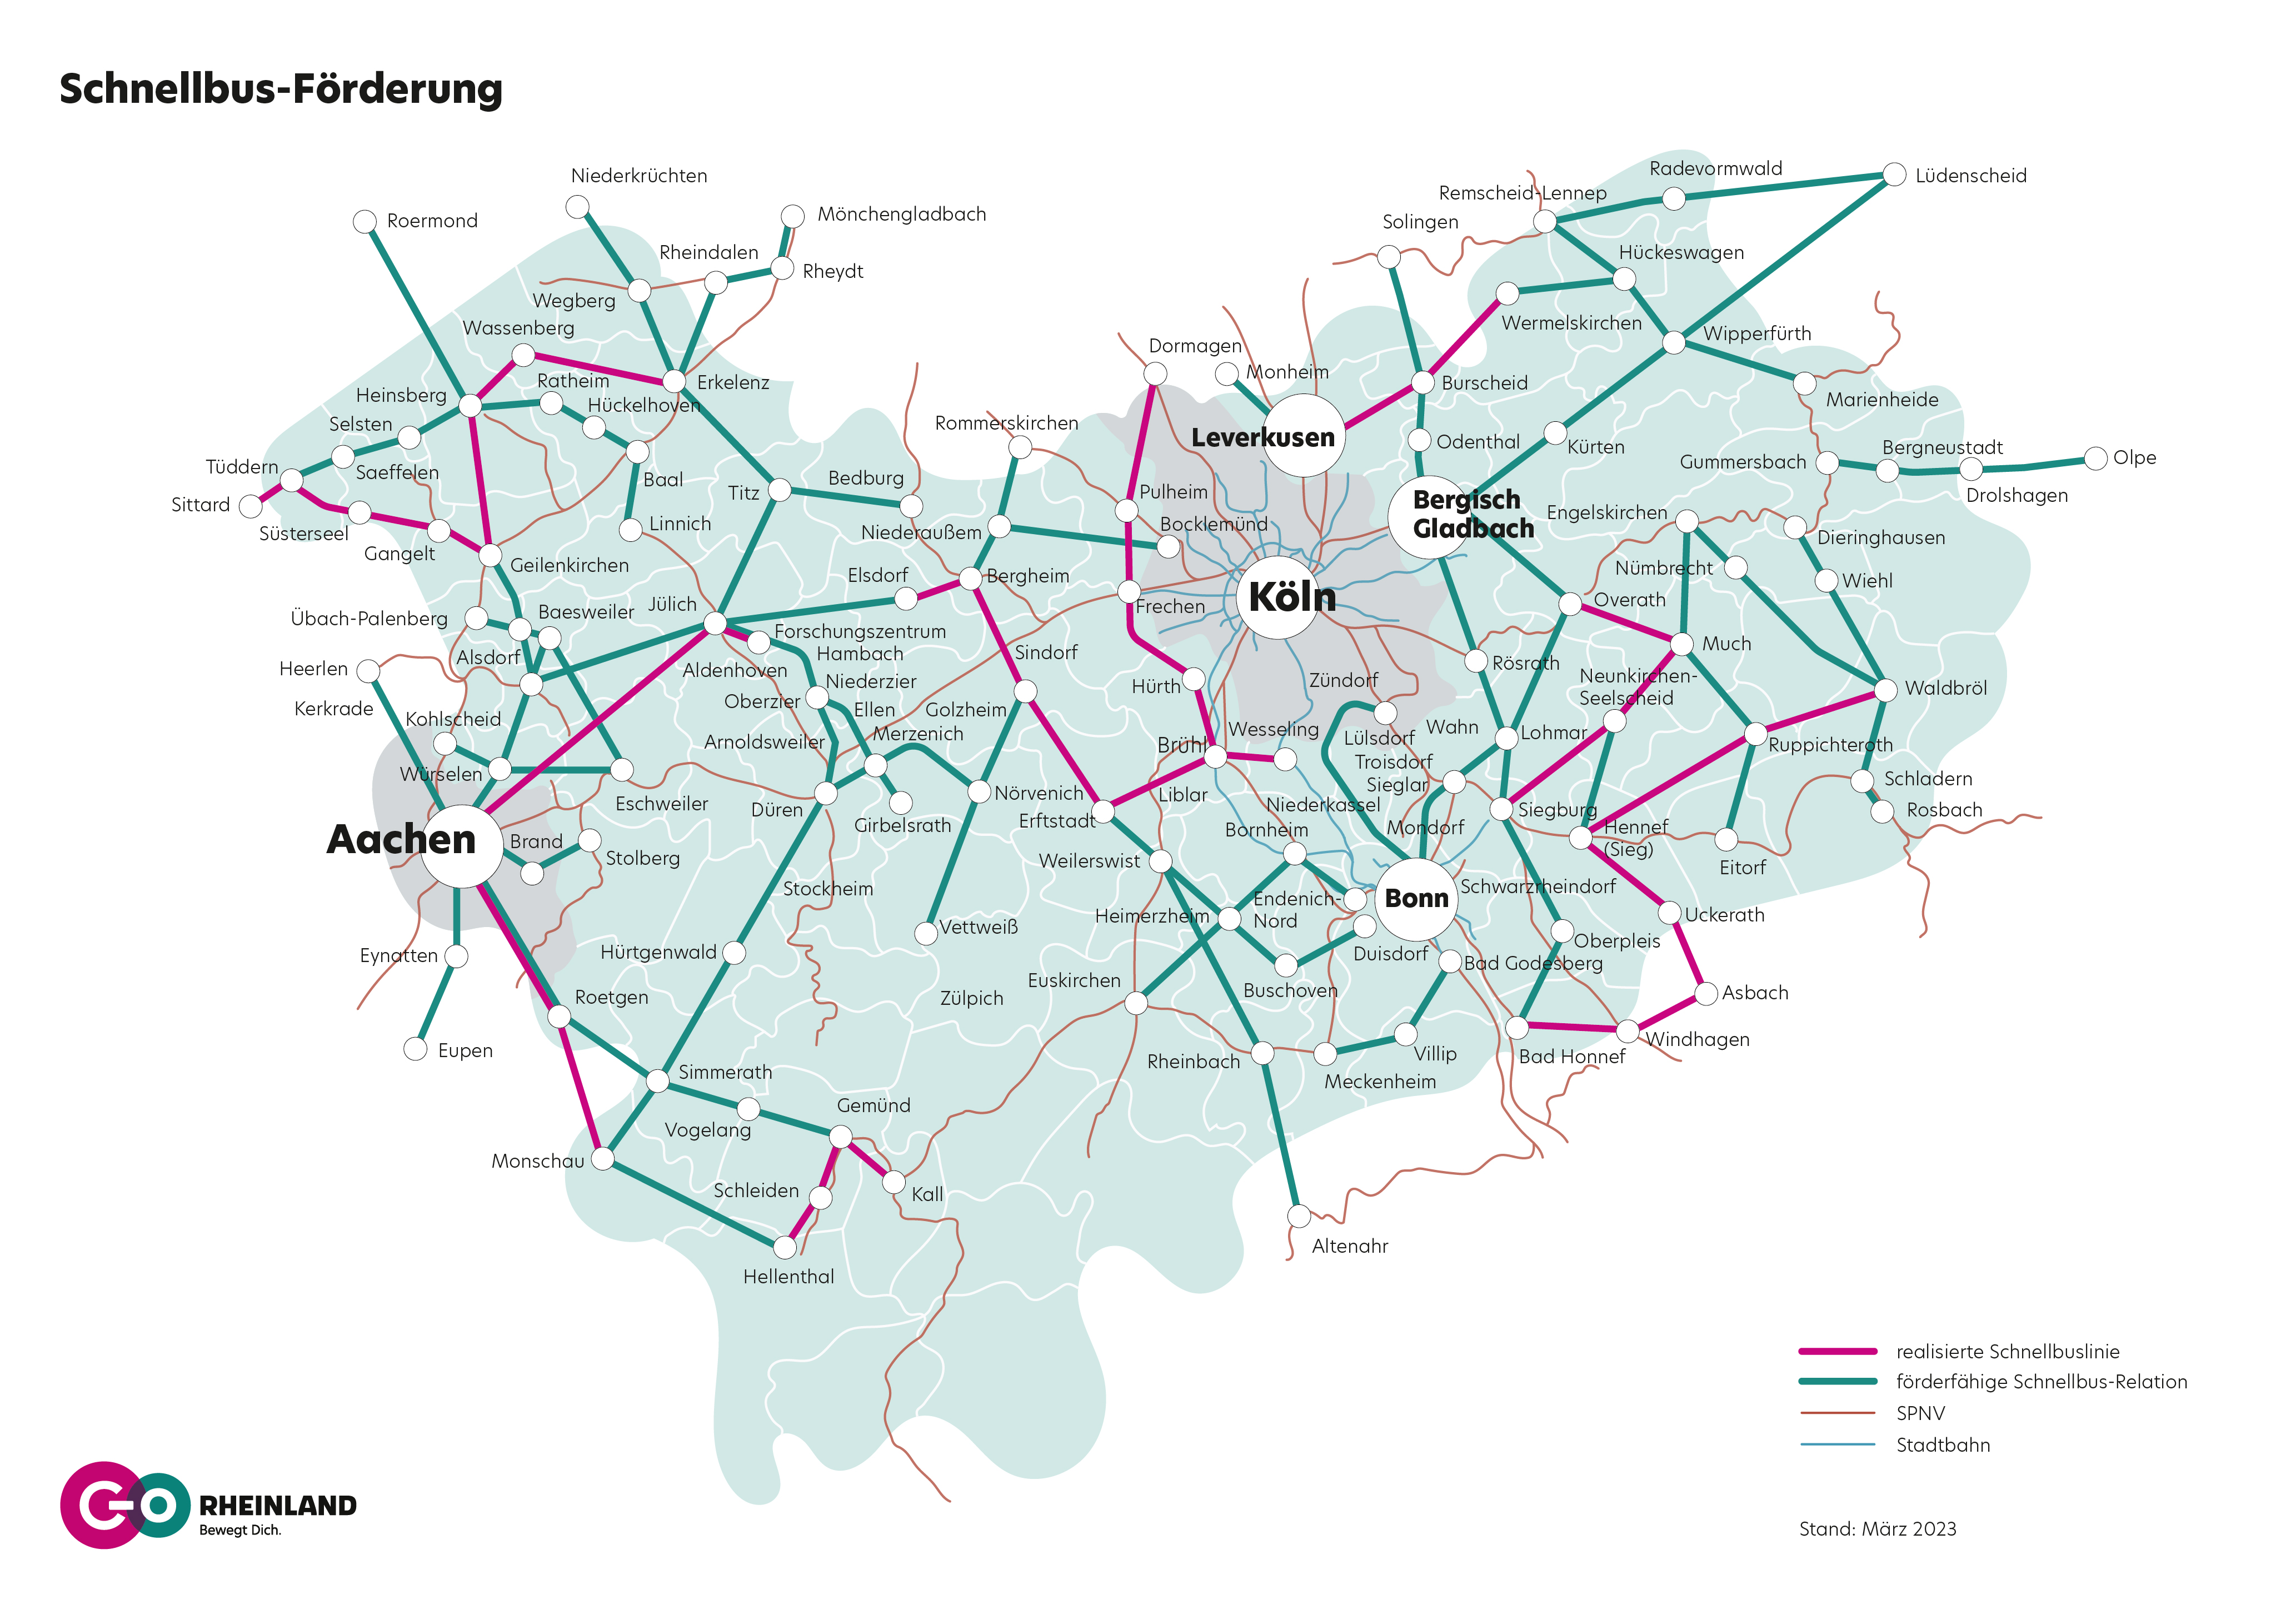 Schnellbuslinien im Gebiet von go.Rheinland